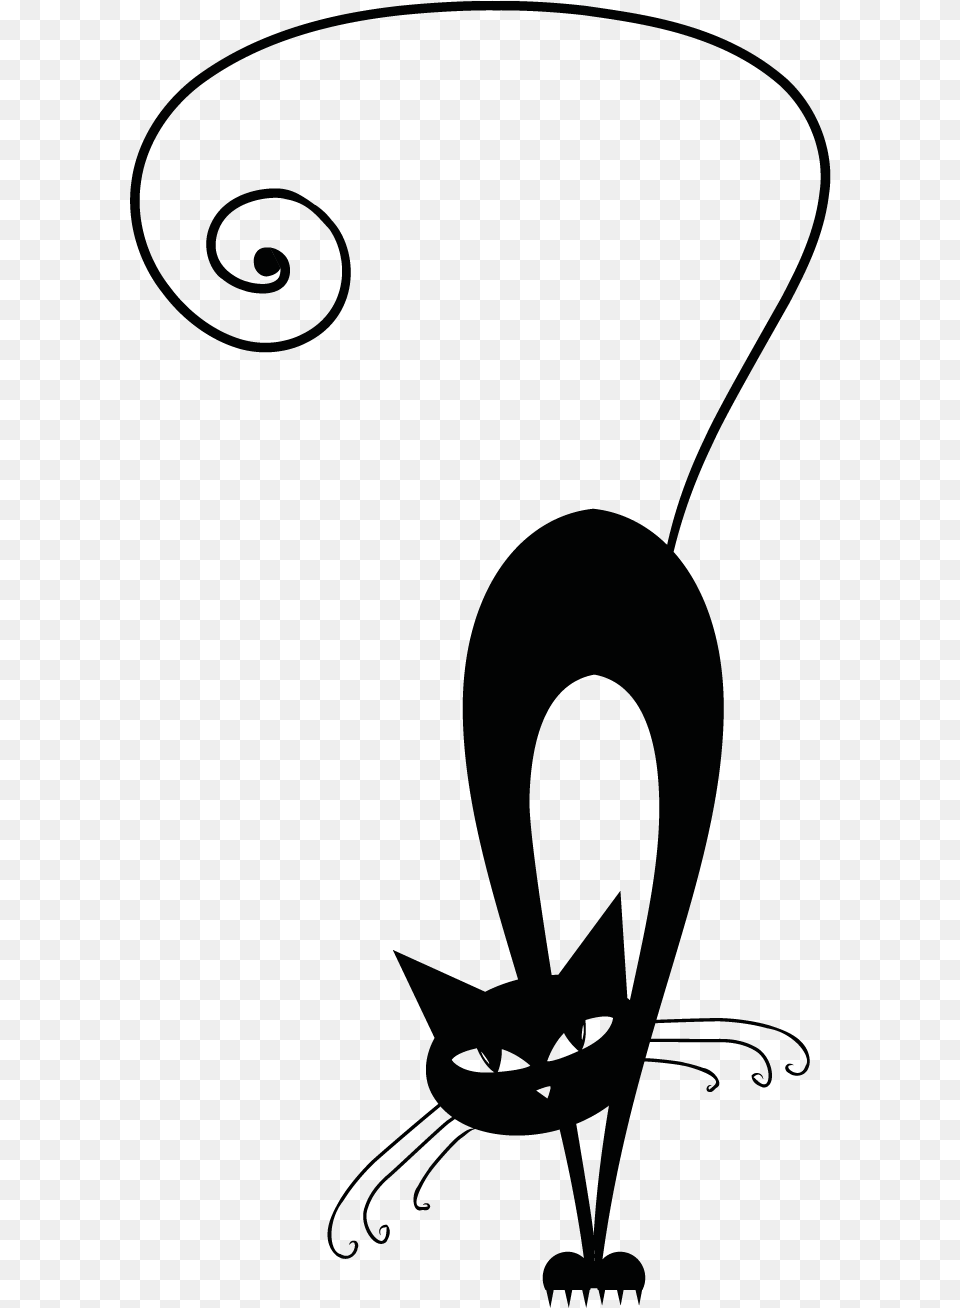 Gatti Stilizzati Immagini Black Cat Silhouette, Stencil, Art Free Png Download